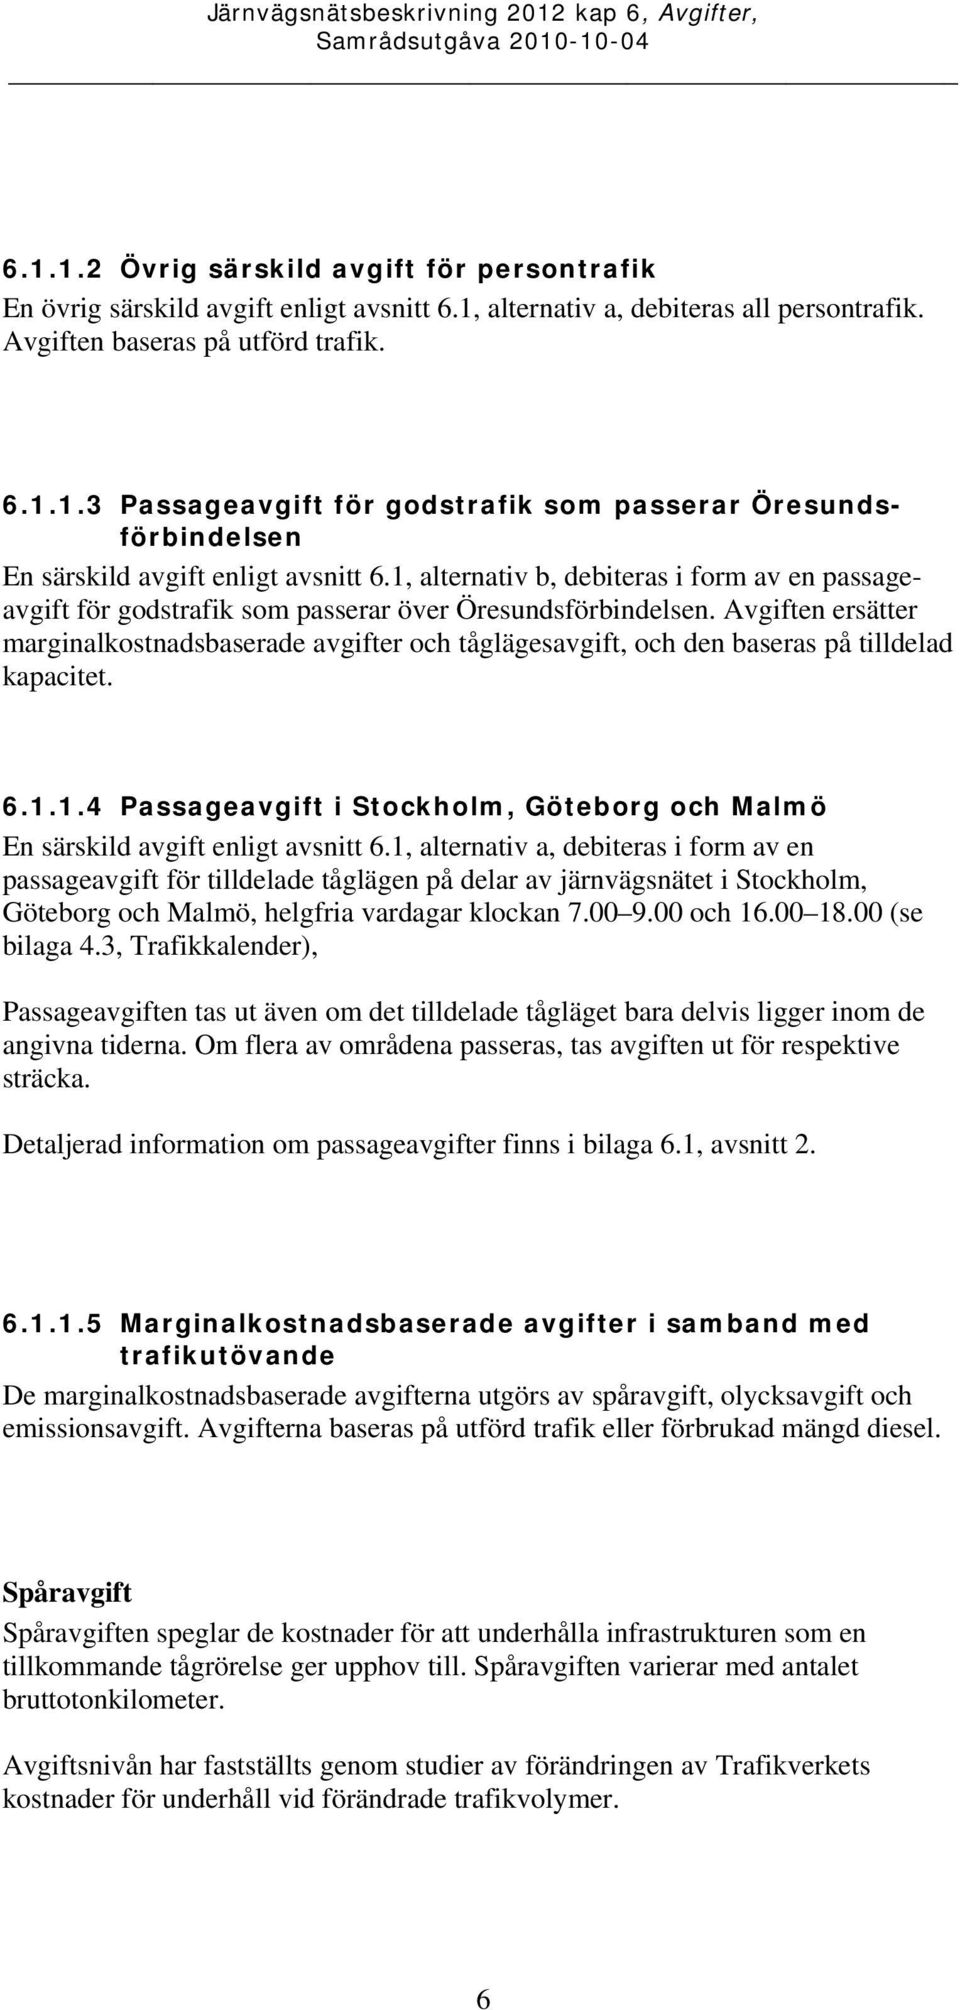 en ersätter marginalkostnadsbaserade avgifter och tåglägesavgift, och den baseras på tilldelad kapacitet. 6.1.1.4 Passageavgift i Stockholm, Göteborg och Malmö En särskild avgift enligt avsnitt 6.